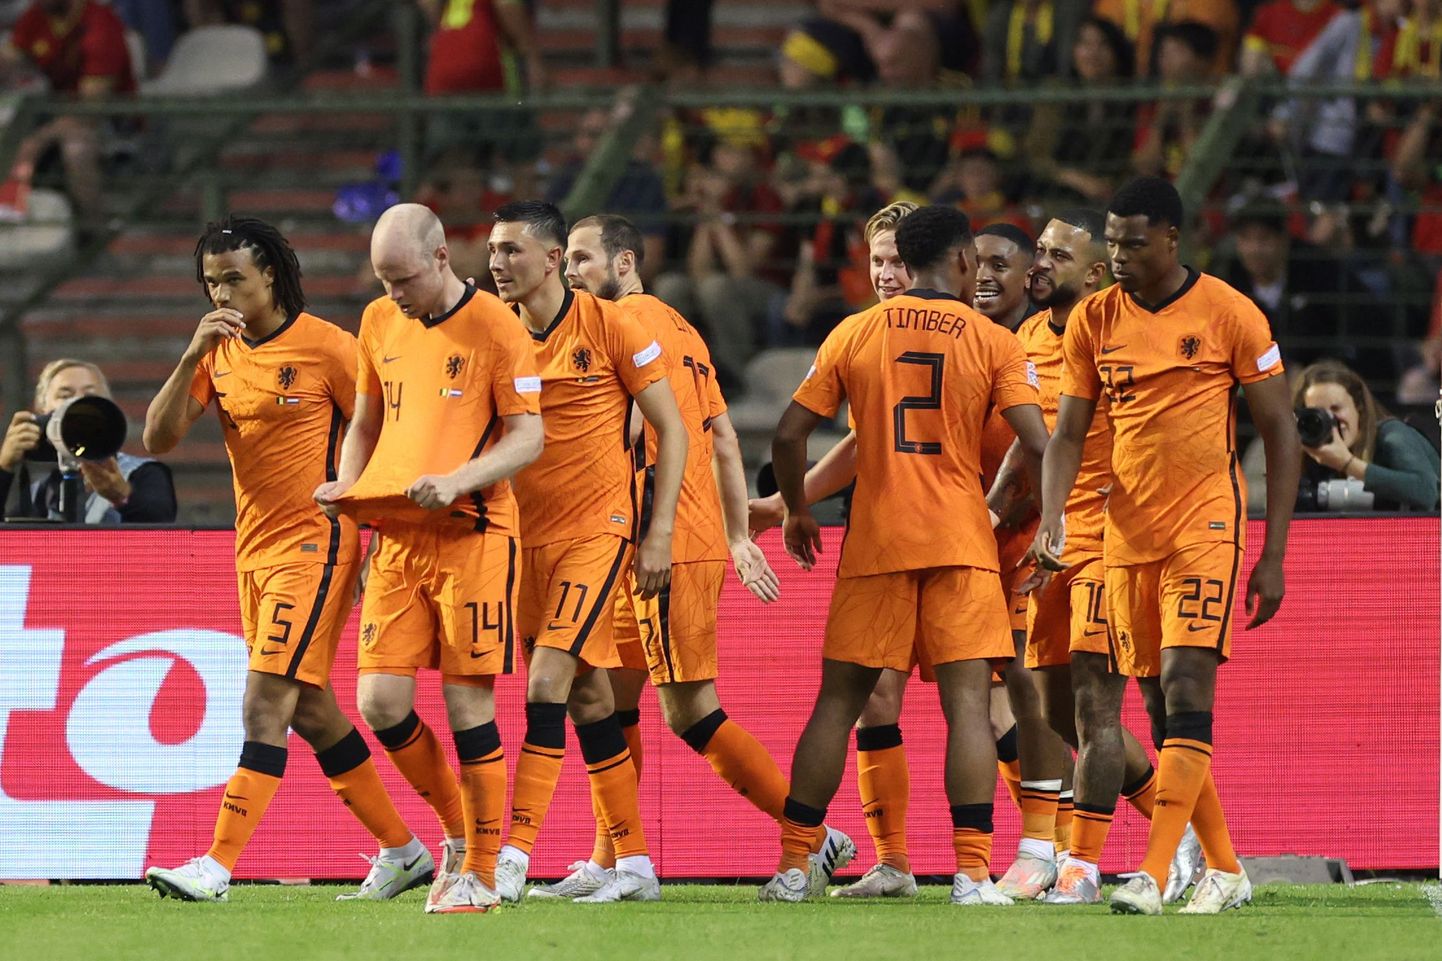 Hollandi jalgpallikoondislased väravat tähistamas.